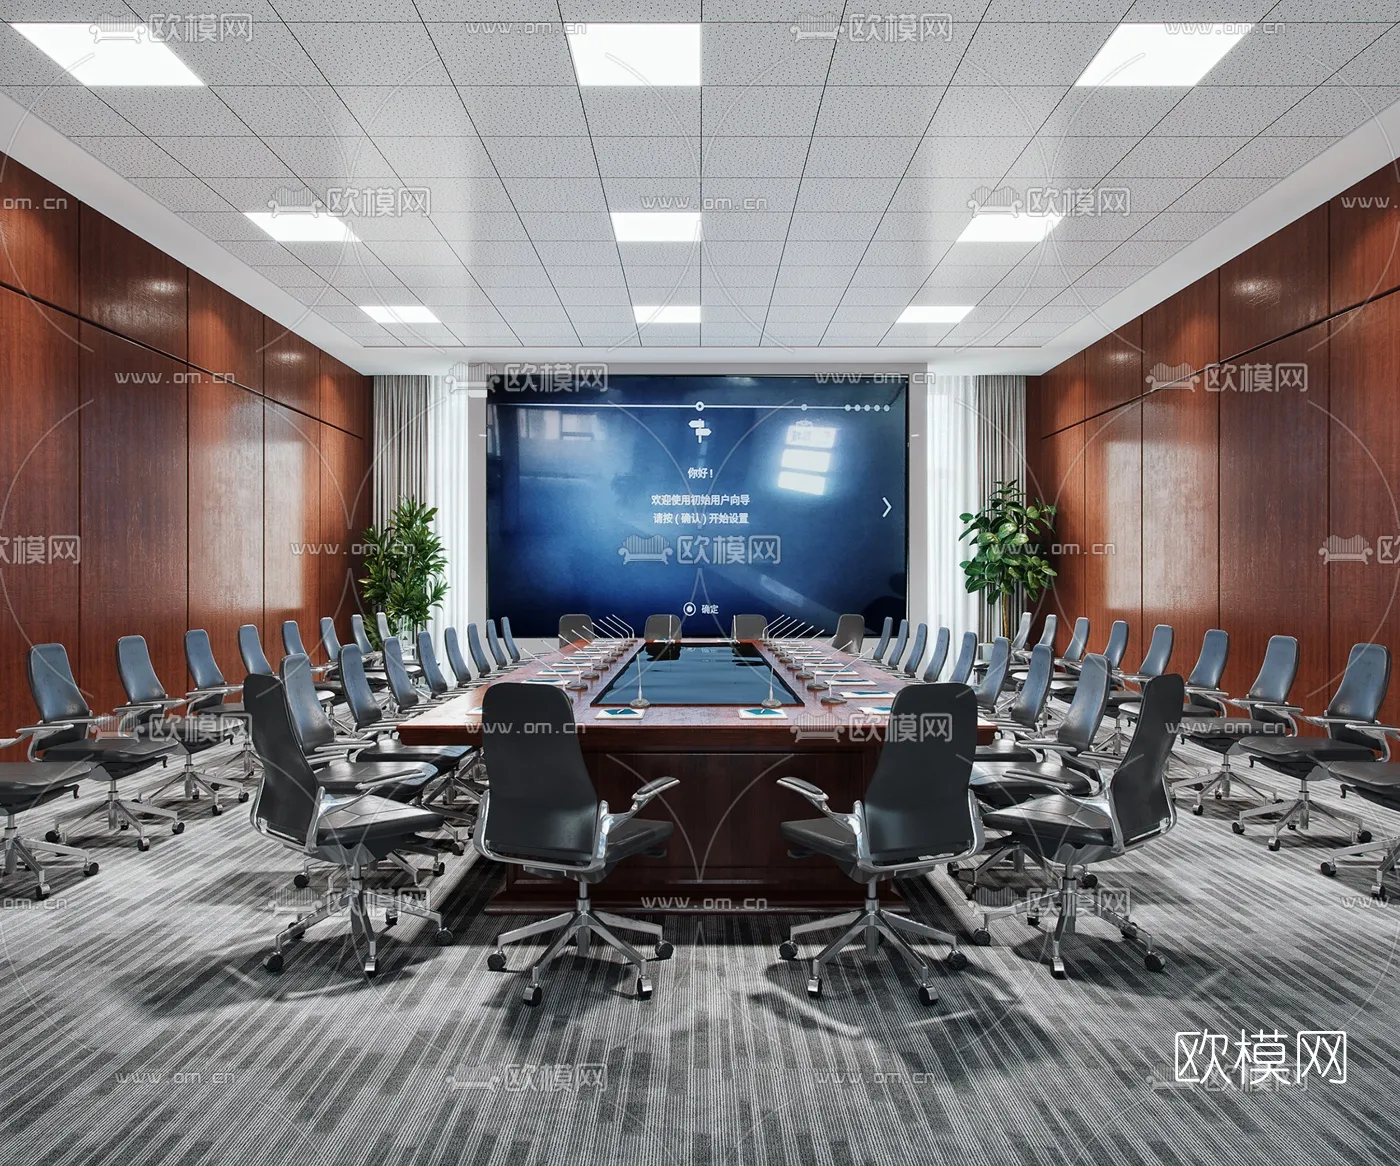 Meeting Room 3D Scenes – 1484